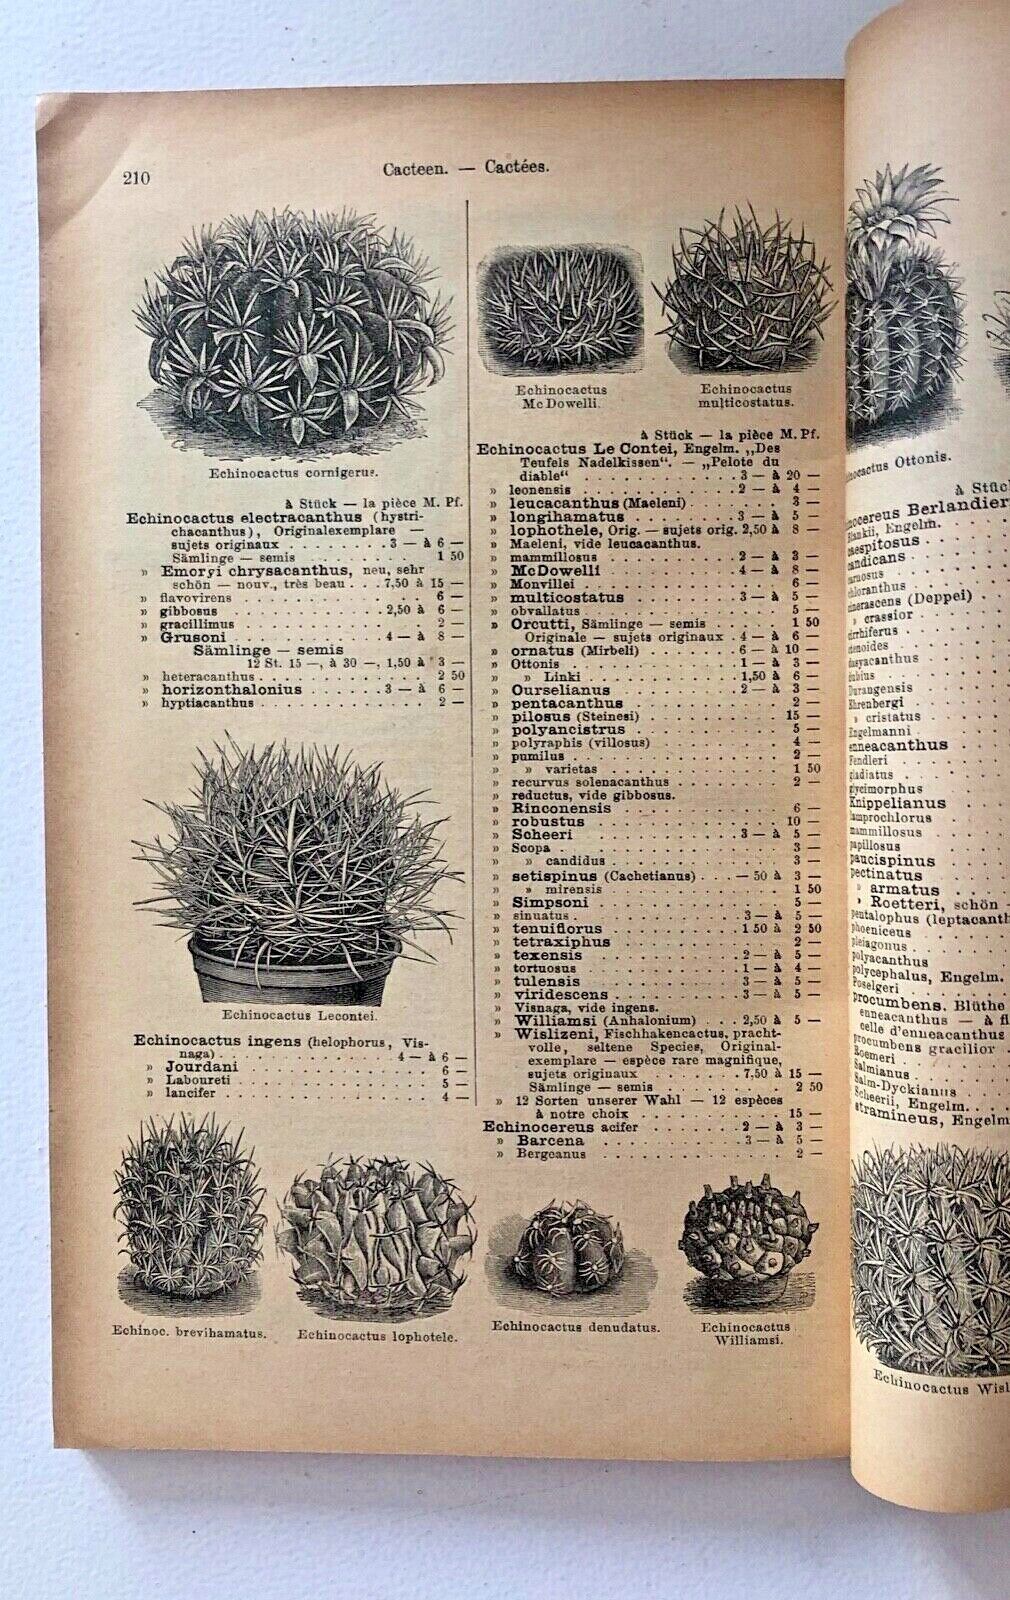 Haage & Schmidt 1898 Haupt-Verzeichniss Samen und Pflanzen